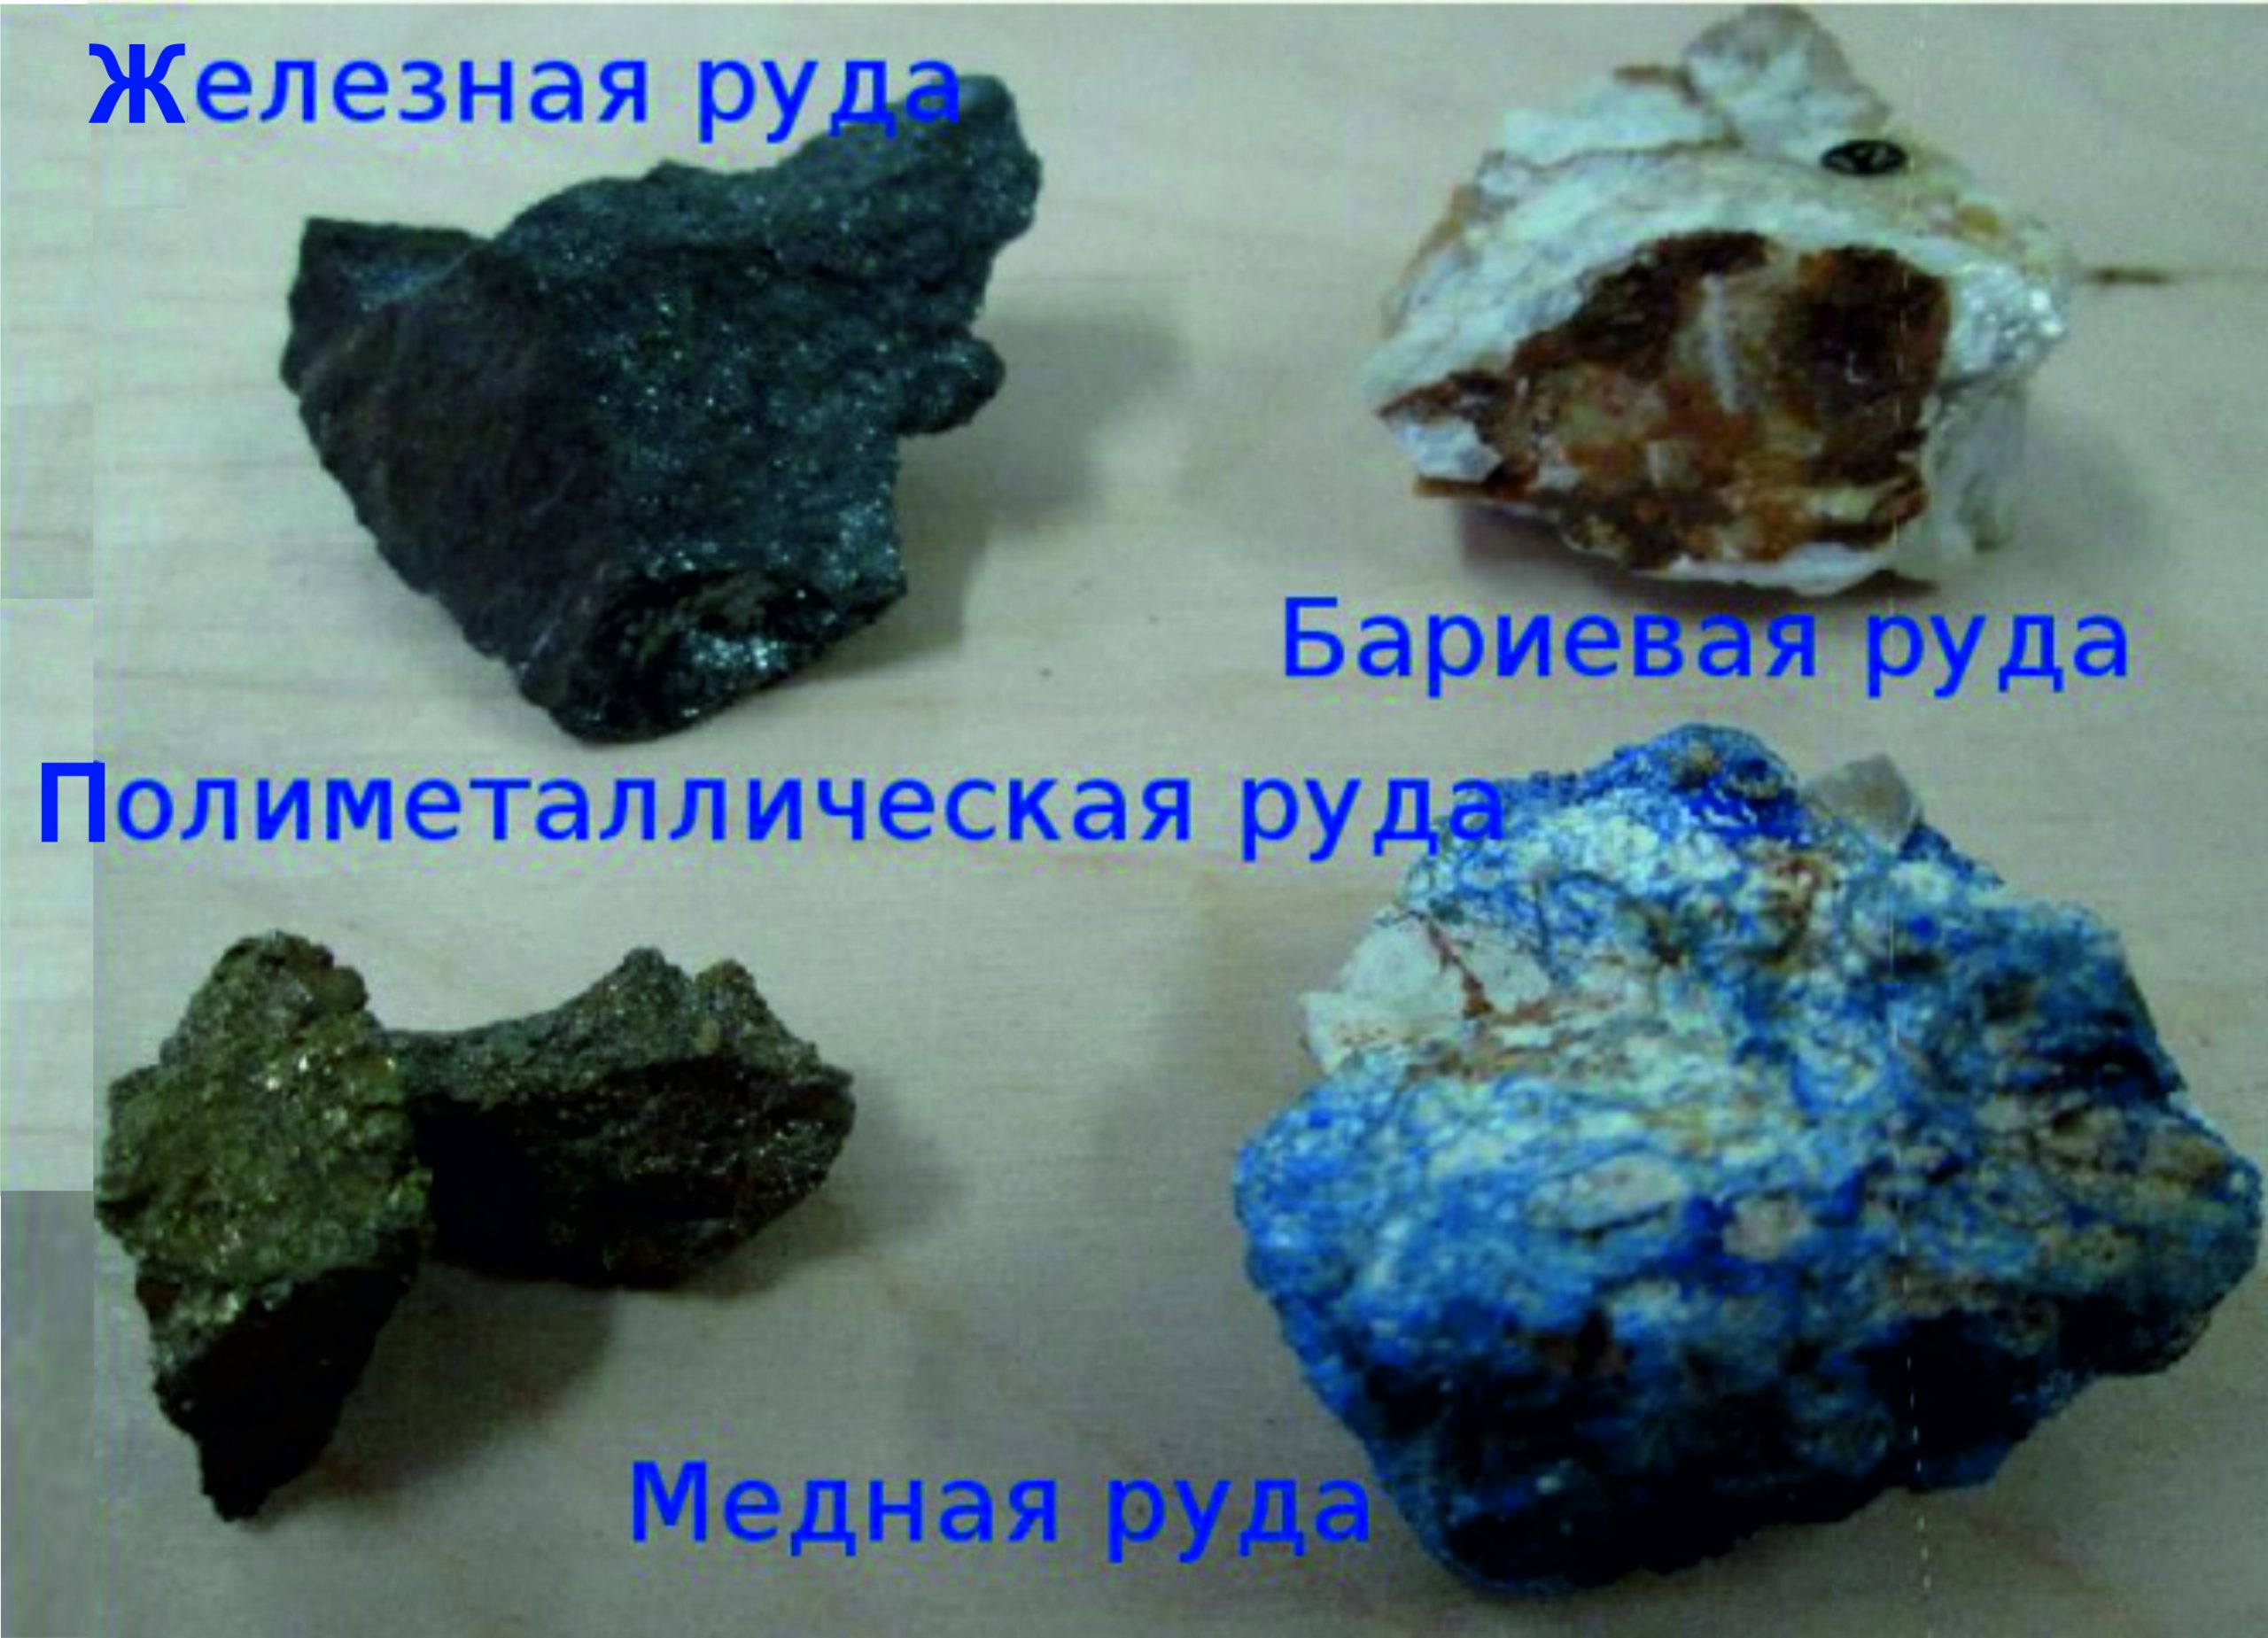 Zajímavosti o minerálech